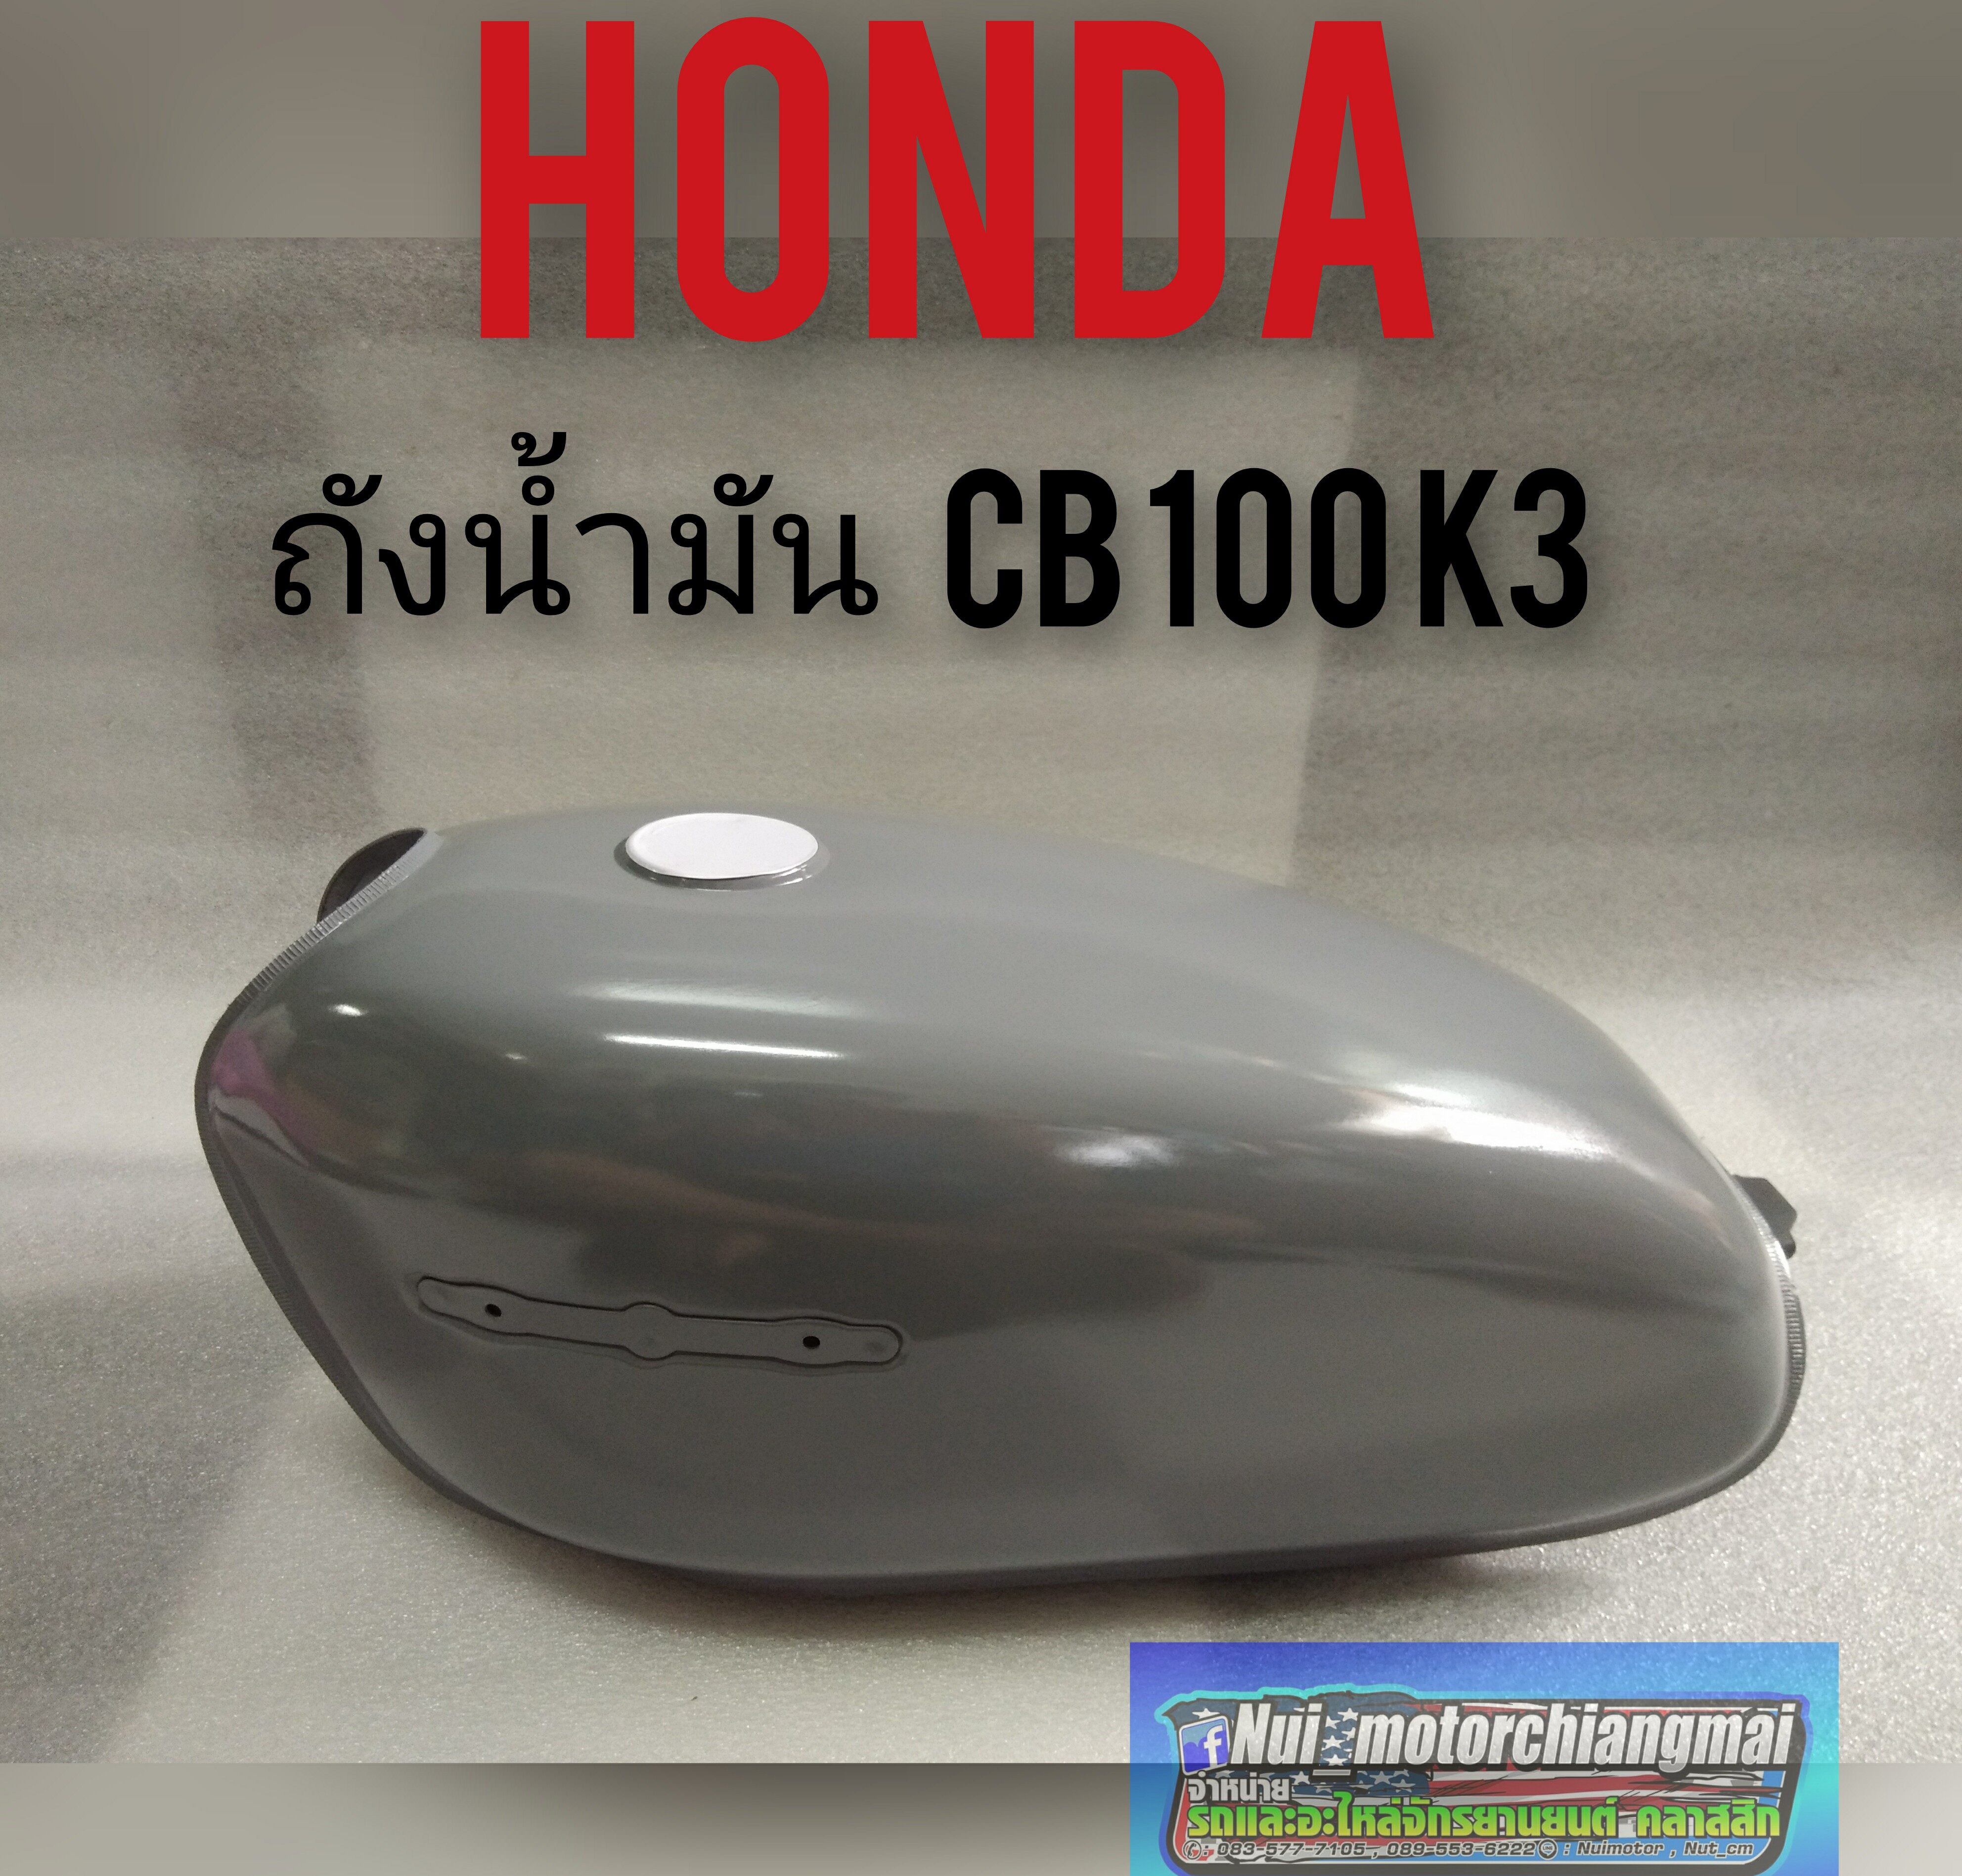 ถังน้ำมัน cb 100 k3 ถังน้ำมัน Honda cb100 k3